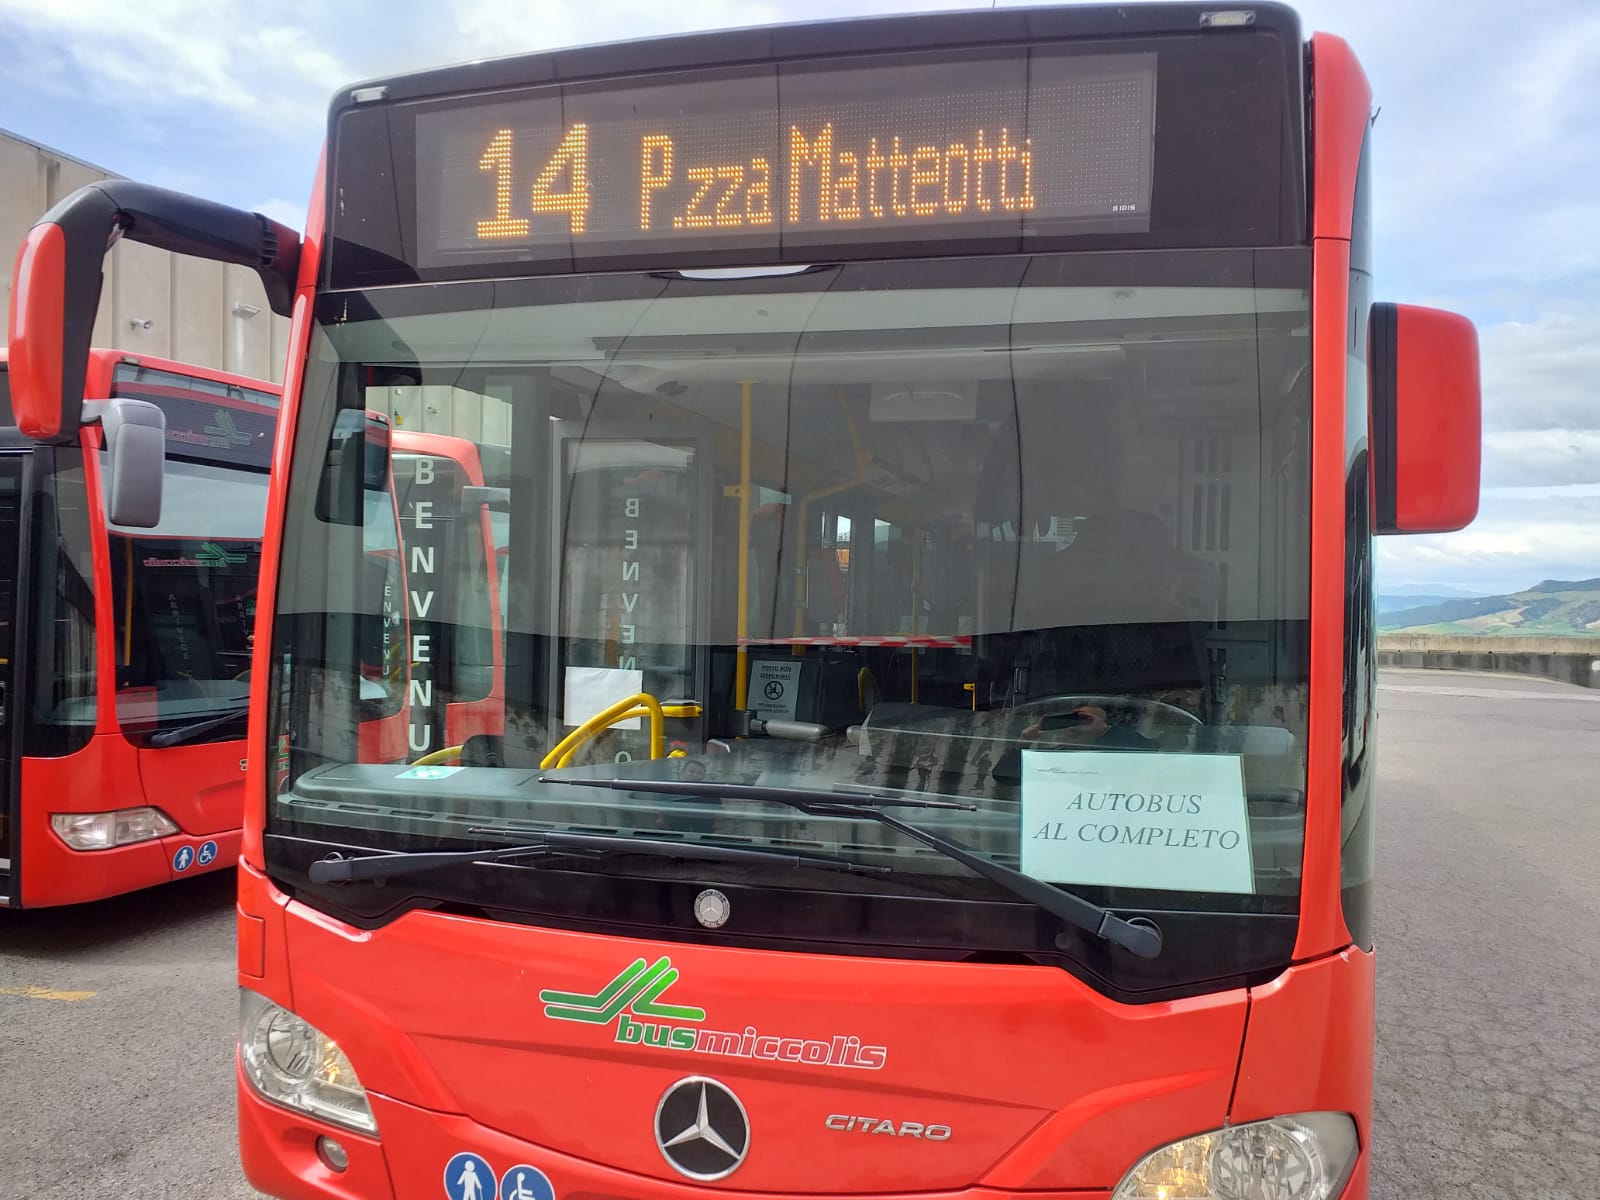 Matera, fase 2 trasporto urbano: il nuovo piano di esercizio della Miccolis